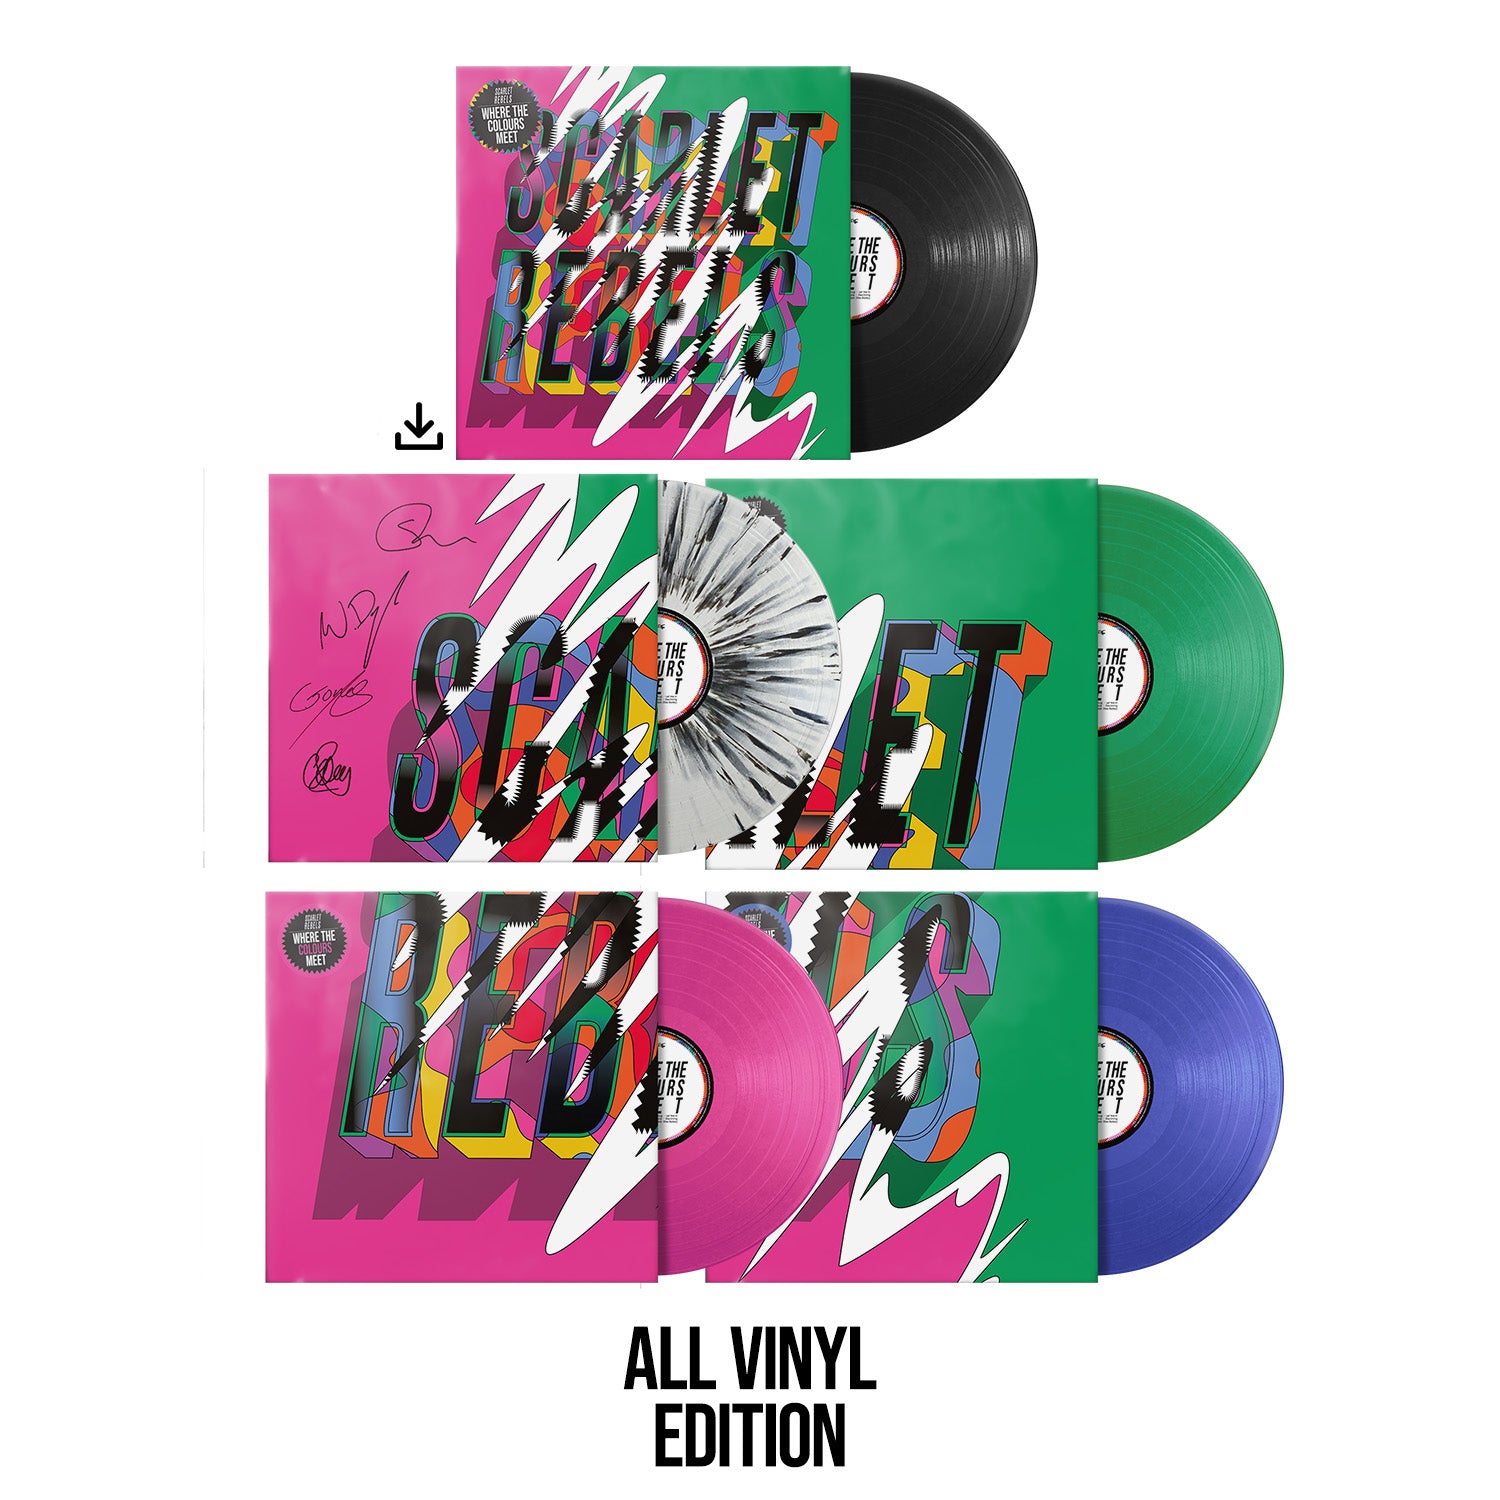 Scarlet Rebels "Where The Colours Meet" All Vinyl Bundle - Splatter, Pink, Green, Blue & Black Vinyl inc. Download - PRE-ORDER